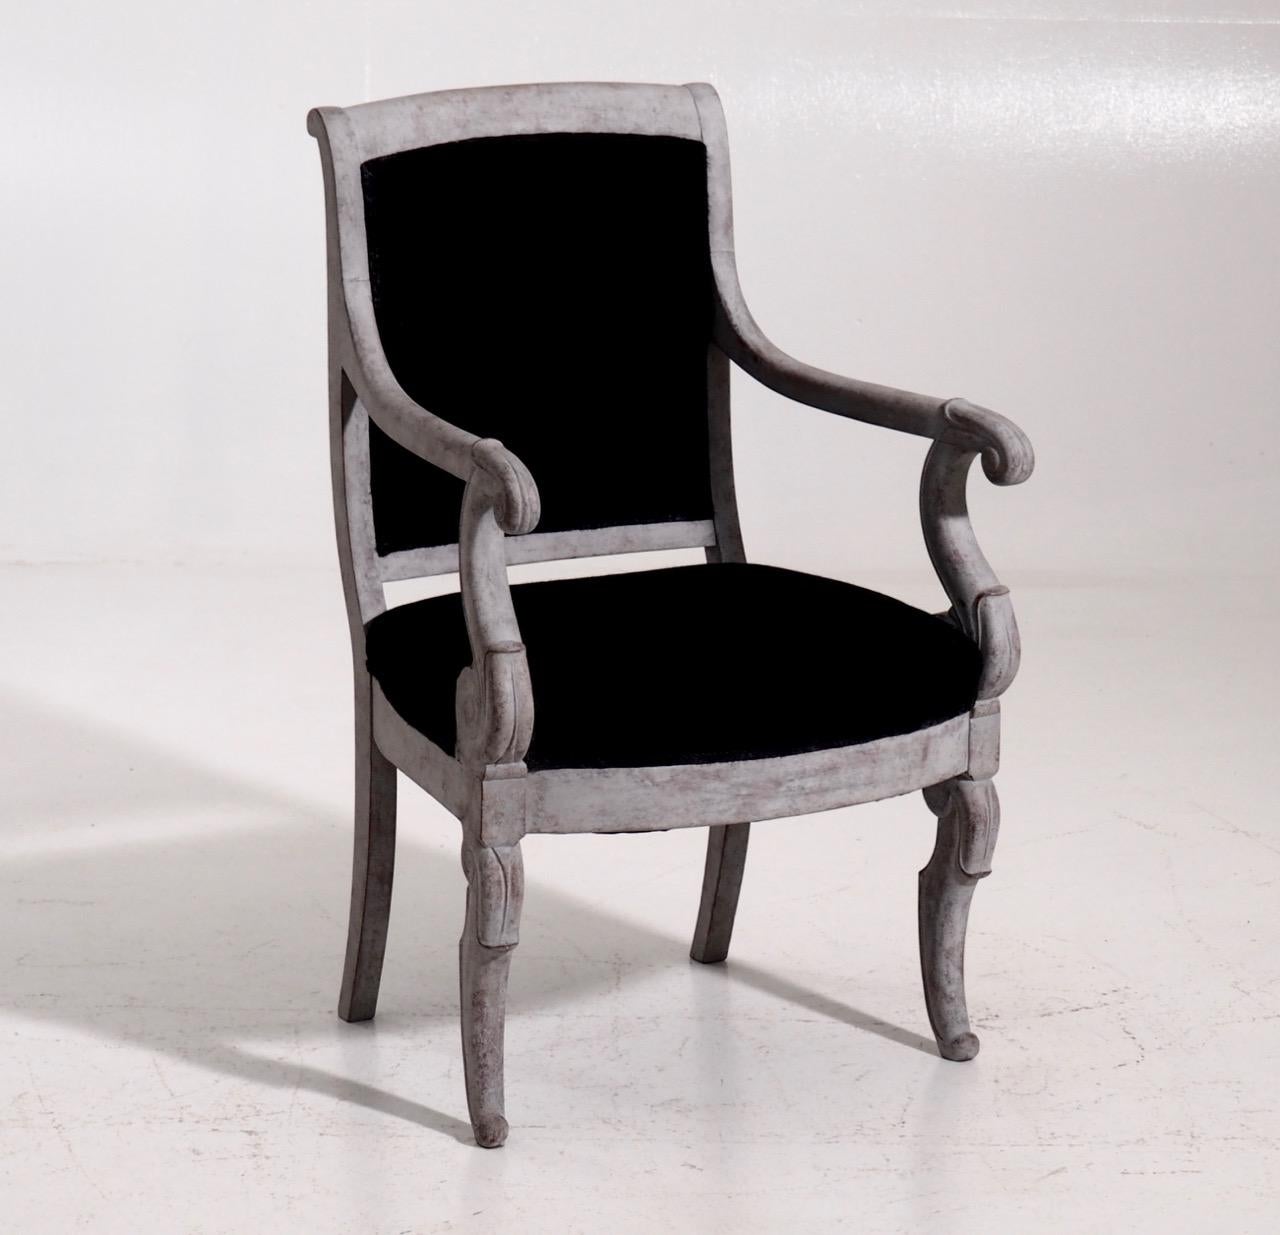 Très rare ensemble de 10 fauteuils français Charles X, début du 19ème siècle.
  